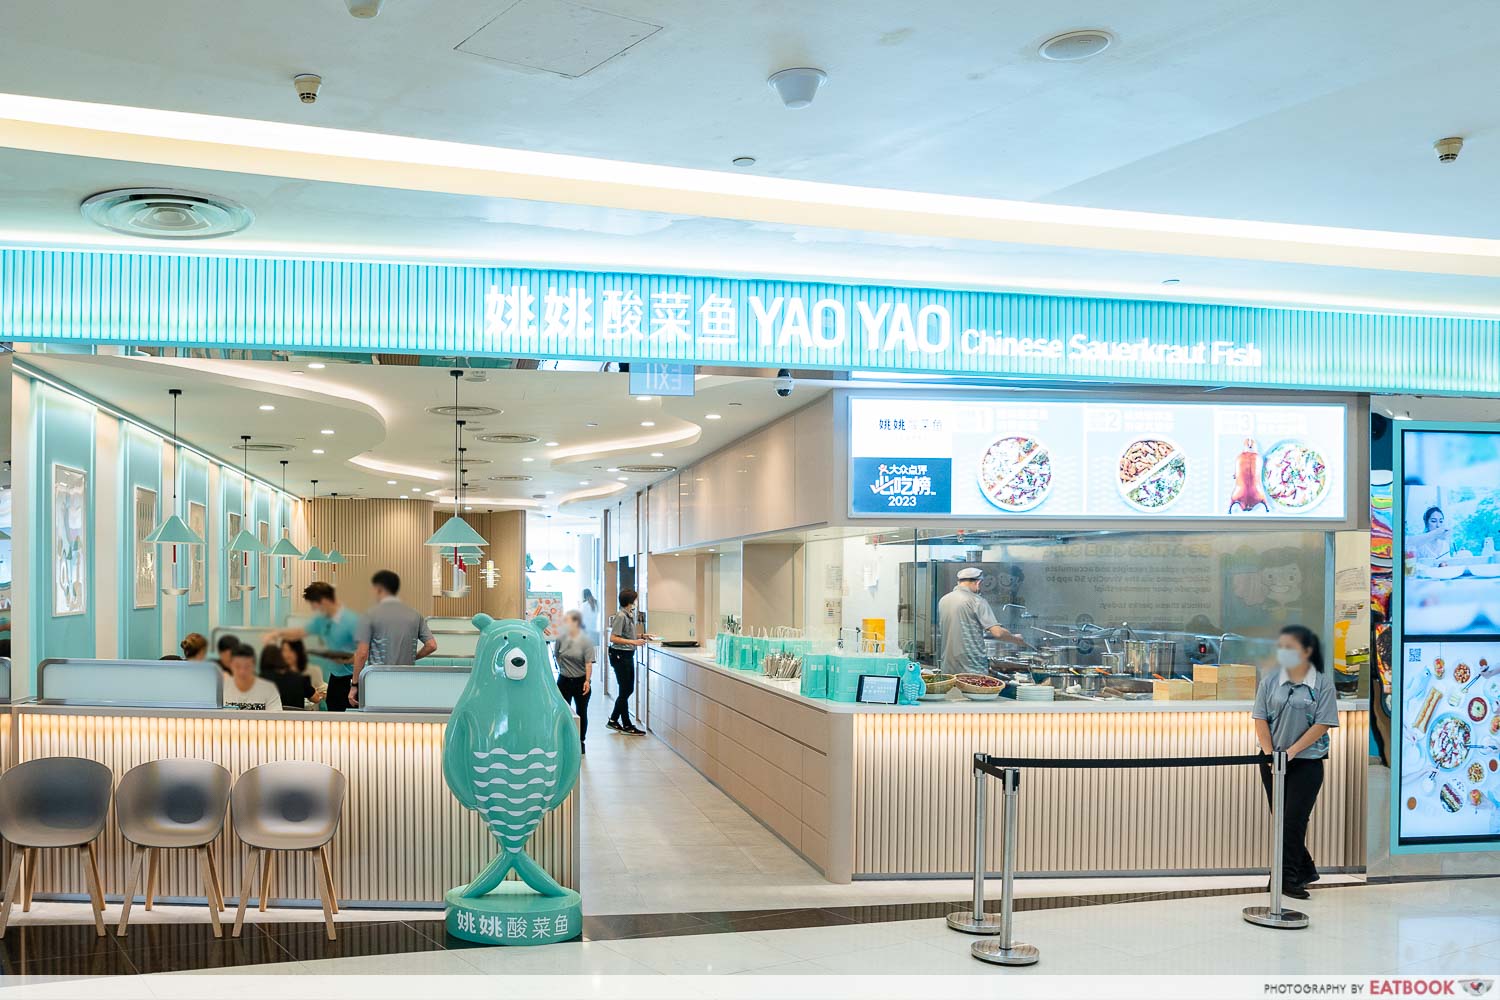 yao yao sauerkraut fish - storefront